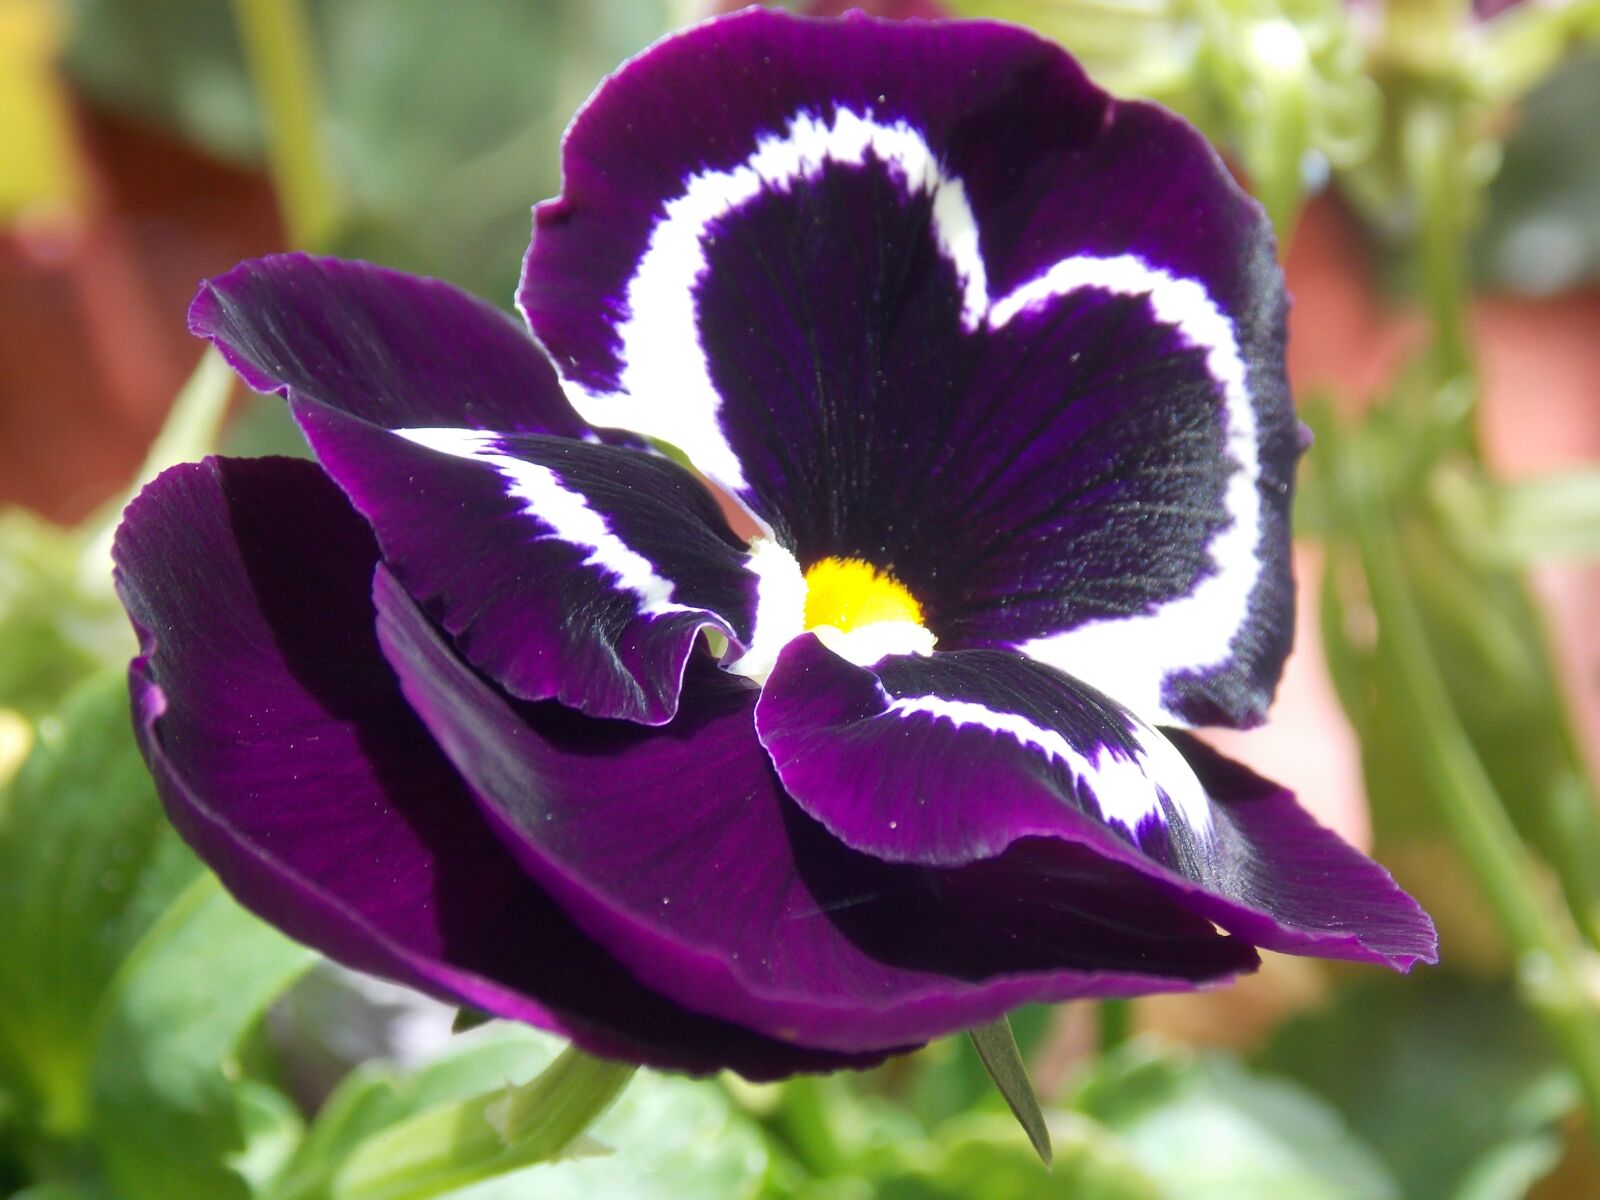 Nikon Coolpix L810 sample photo. Flowers, garden, violet photography